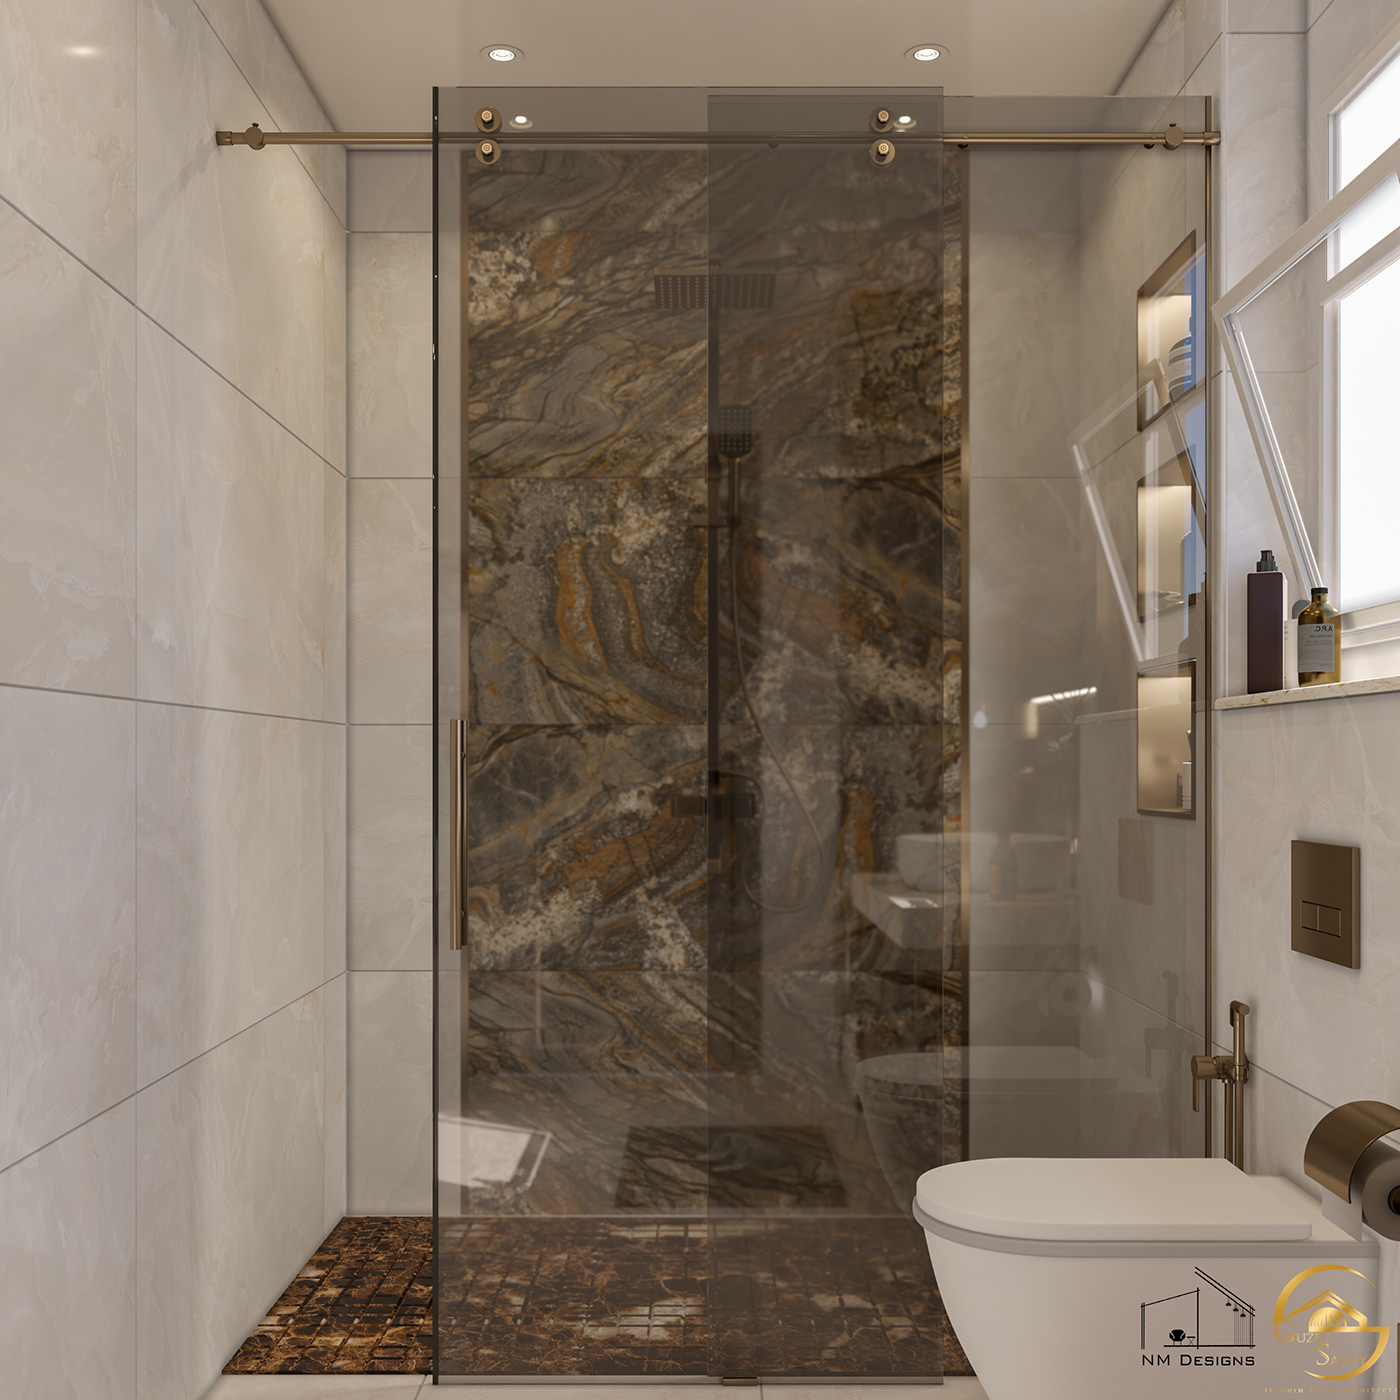 indoor architecture visualization bathroom toilet modern interior design  Render 3ds max vray